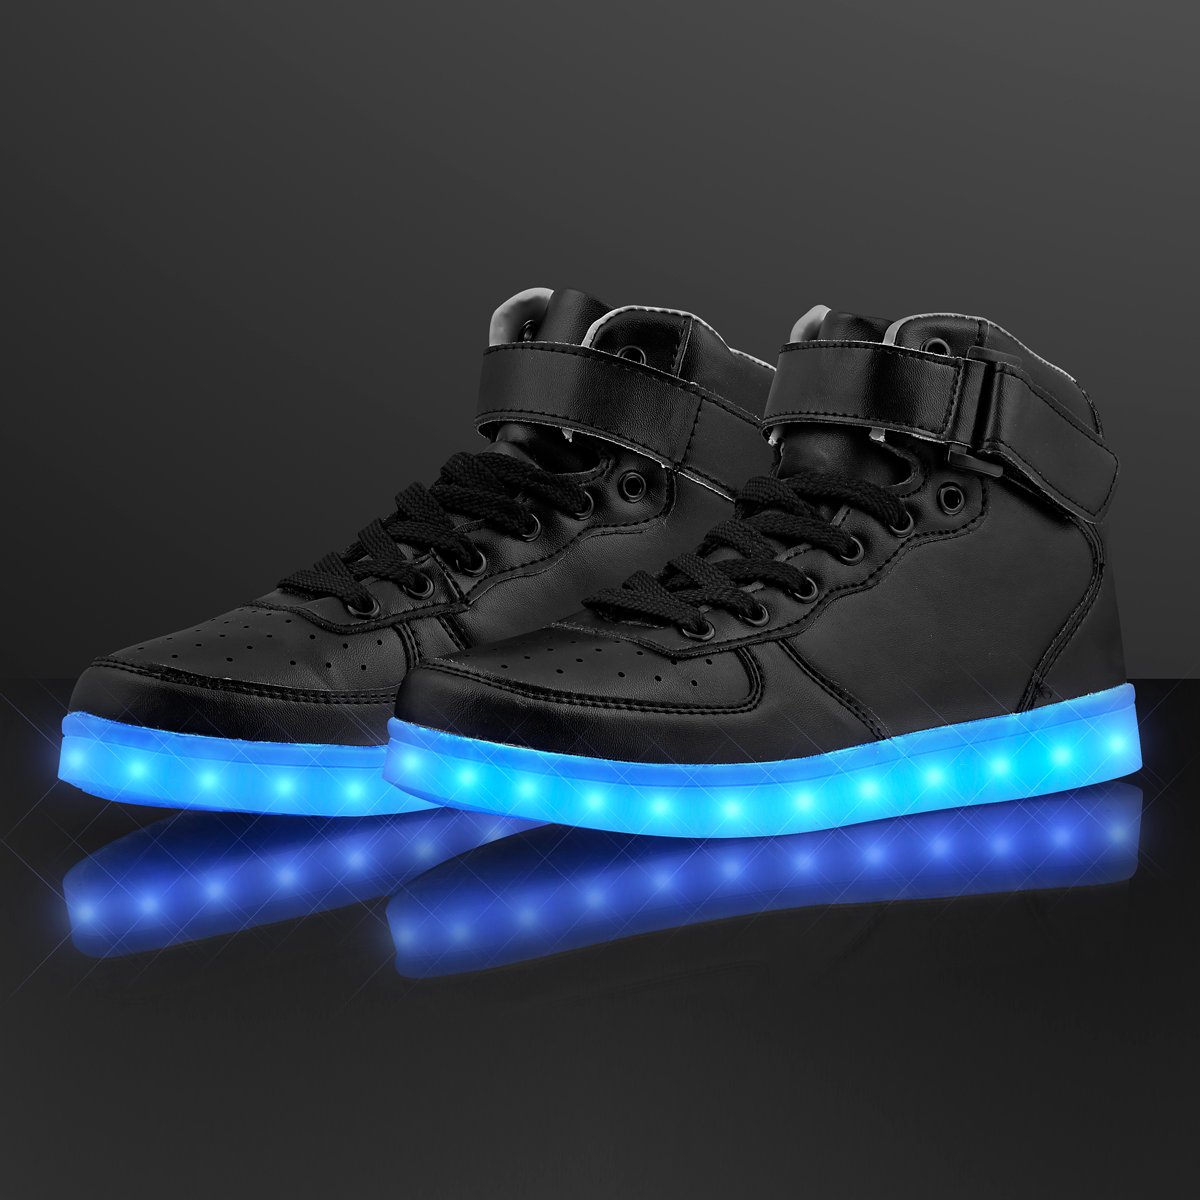 LED Light Up Shoes | FlashingBlinkyLights